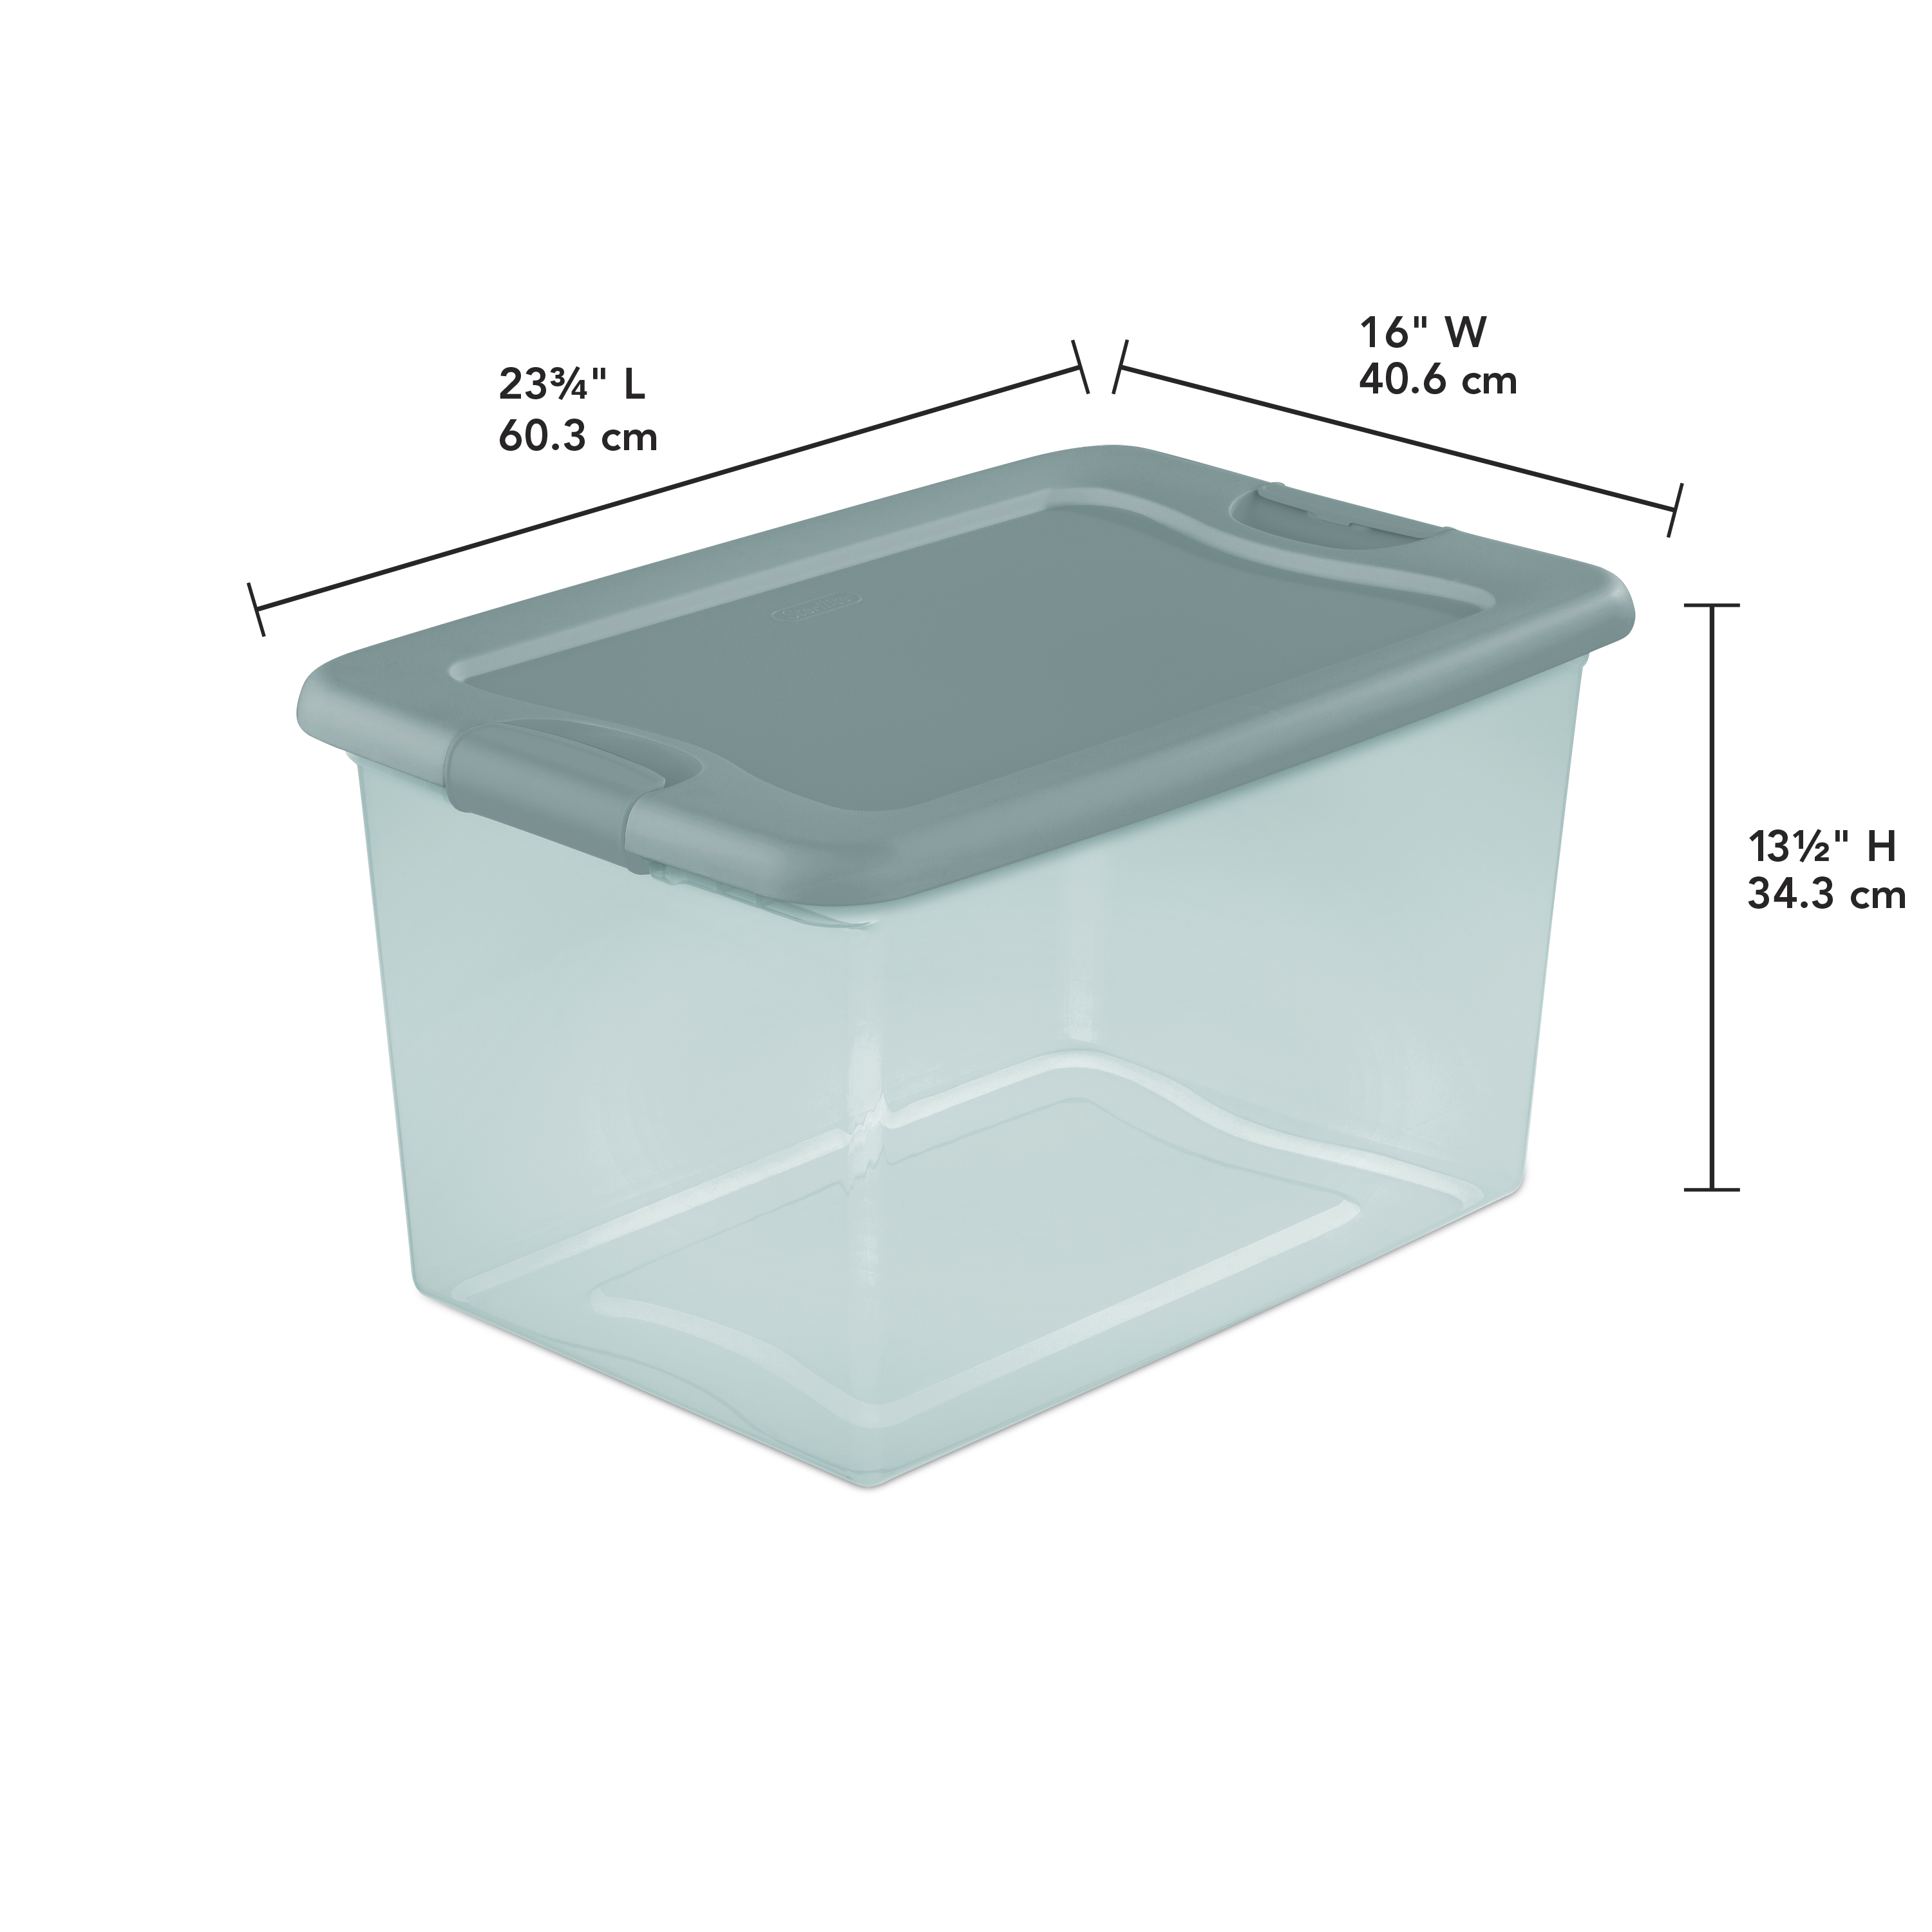 Sterilite 64 Qt. Latching Box Plastic, Aqua Slate Tint - image 4 of 4